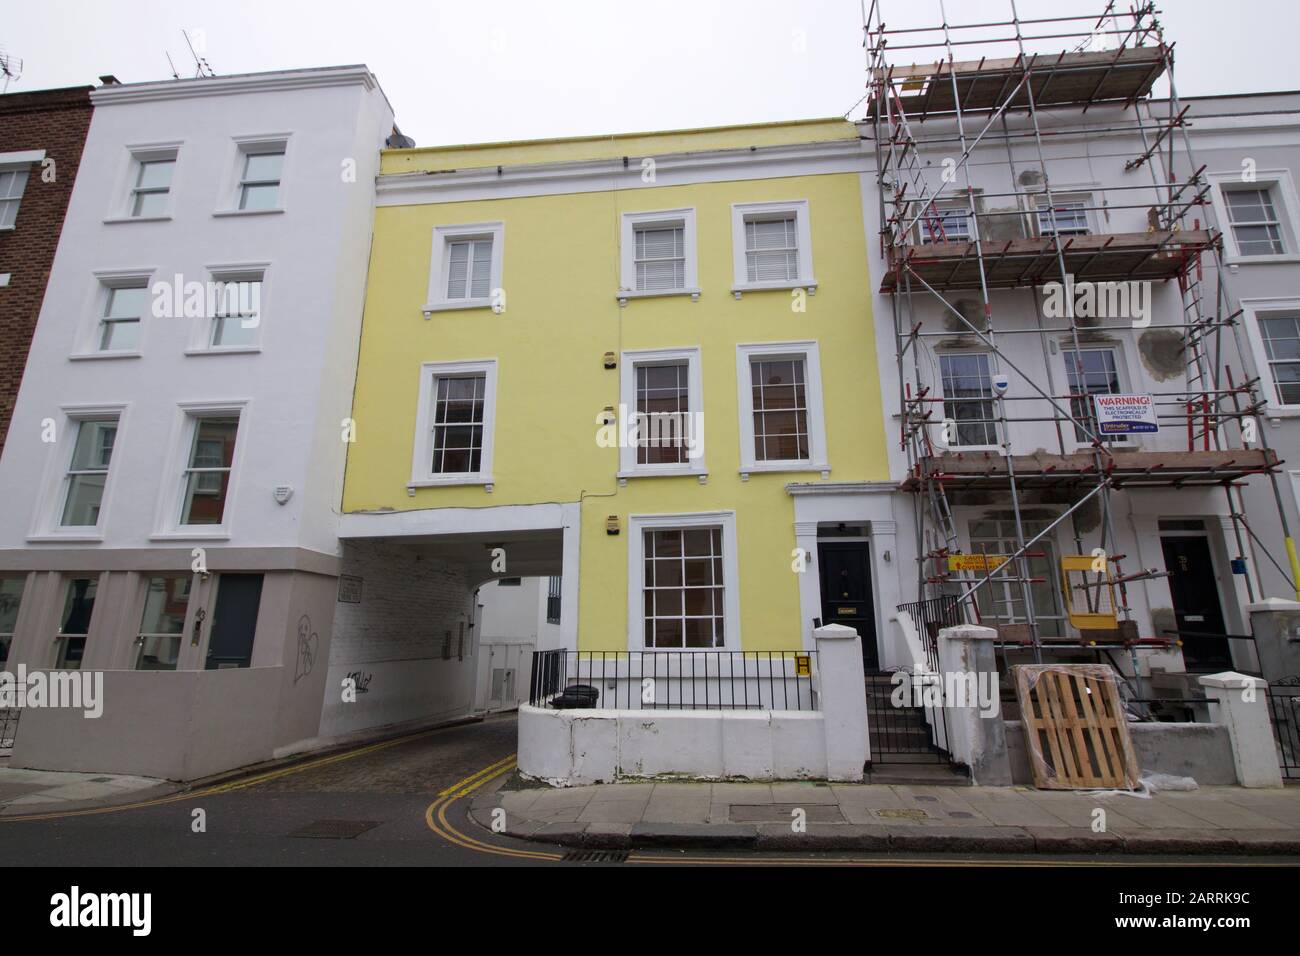 25 janvier 2020 - Londres, Royaume-Uni: Maisons en douceur avec échafaudage à l'extérieur Banque D'Images